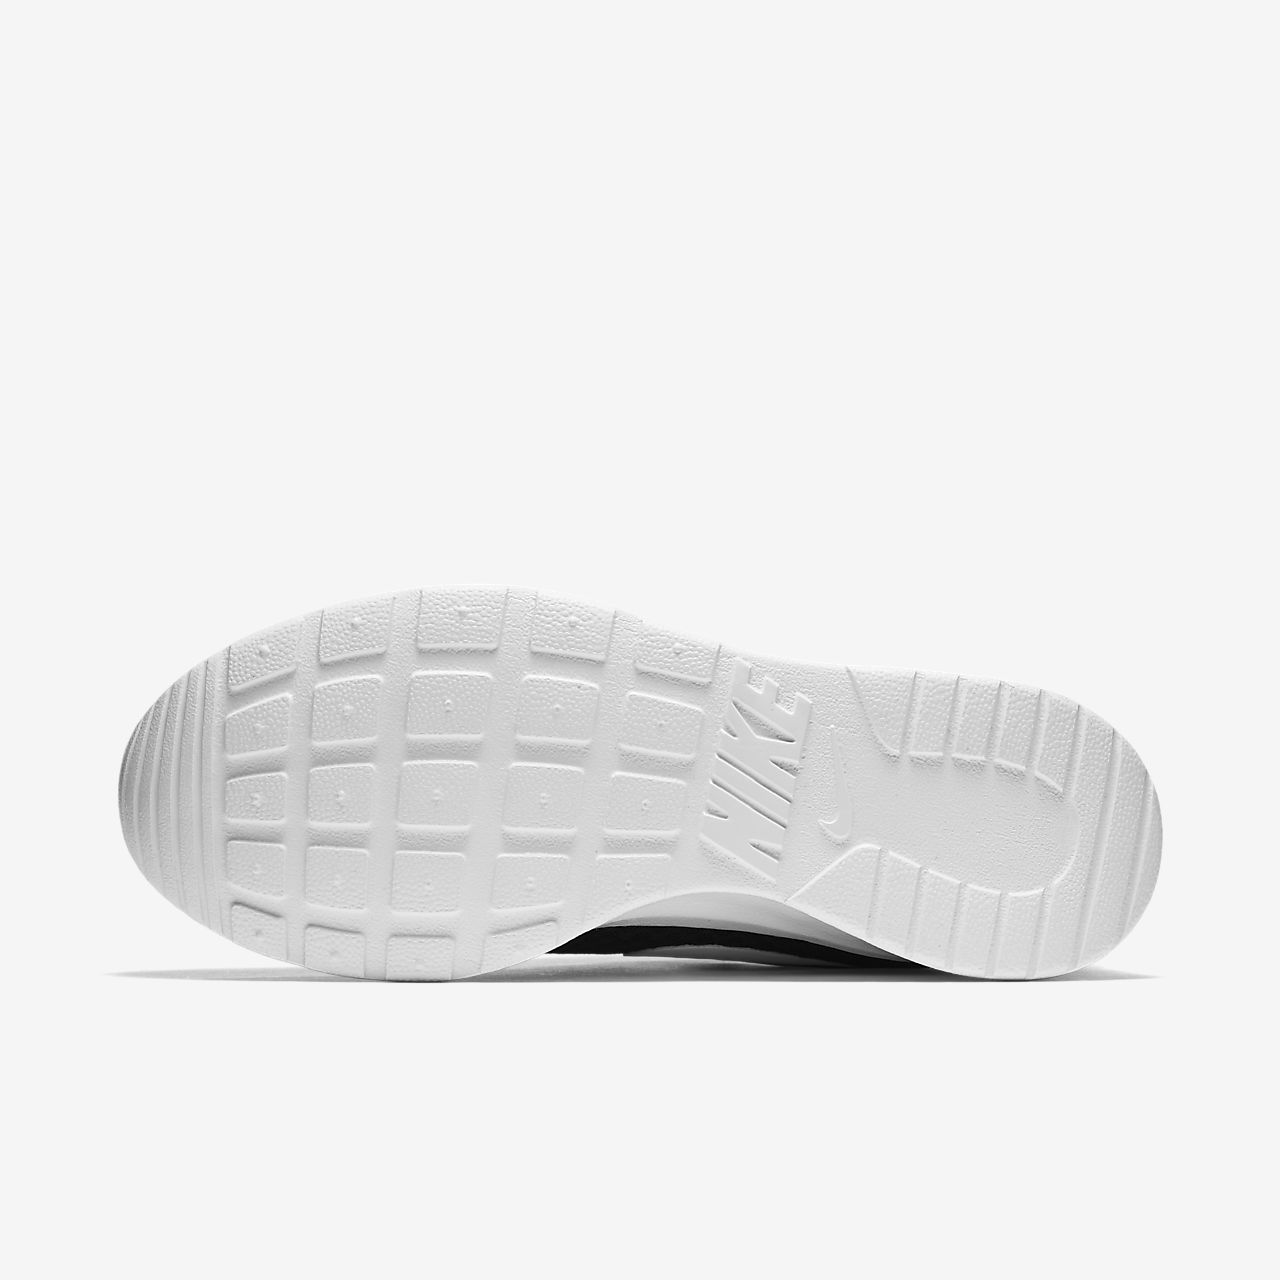 Nike Tanjun - Sneakers - Sort/Hvide | DK-69510